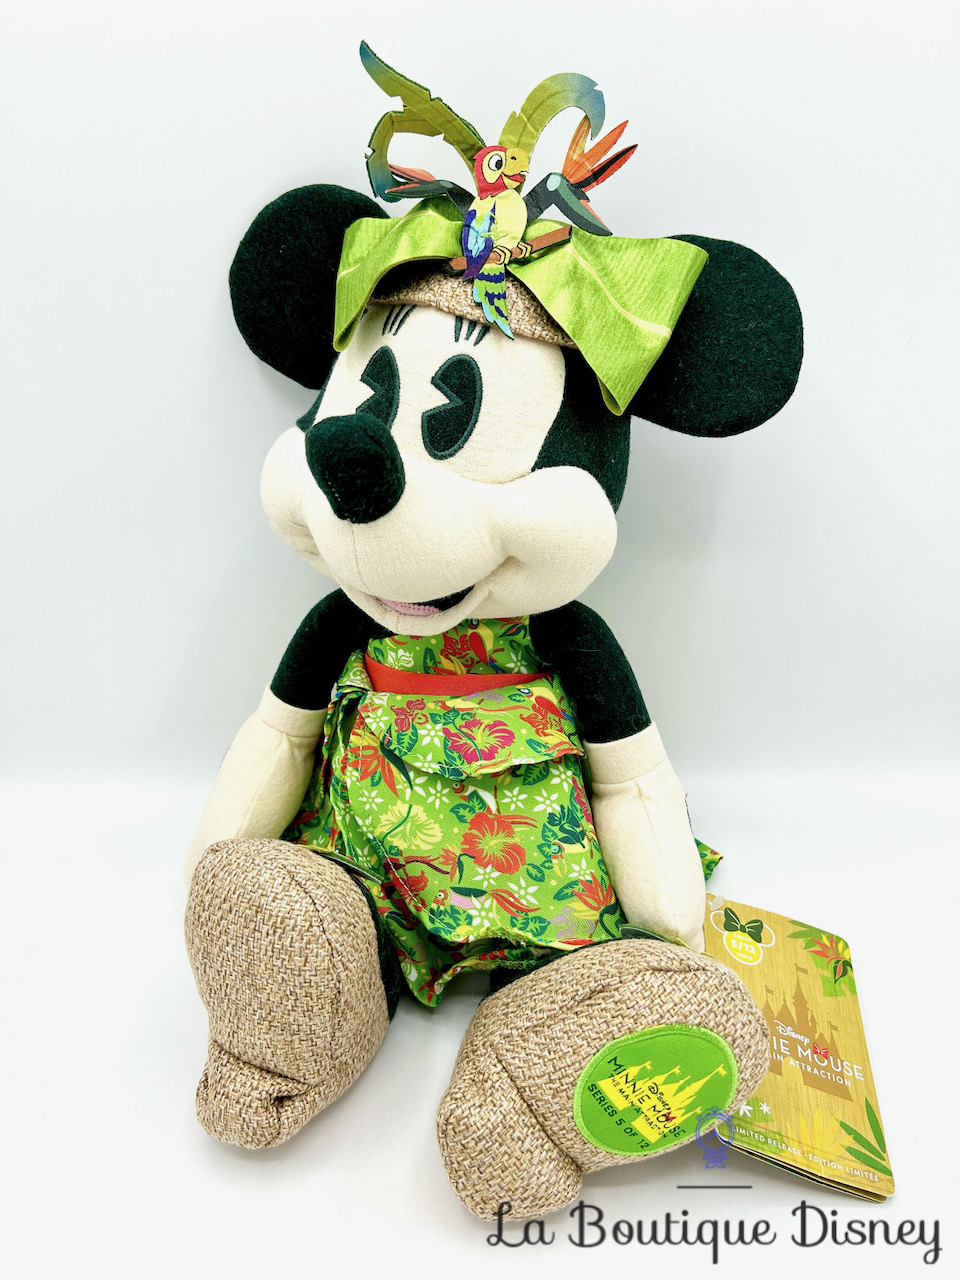 Peluche Minnie Mouse The Main Attraction 5 sur 12 Enchanted Tiki Room Disney Store 2020 Édition limitée 43 cm